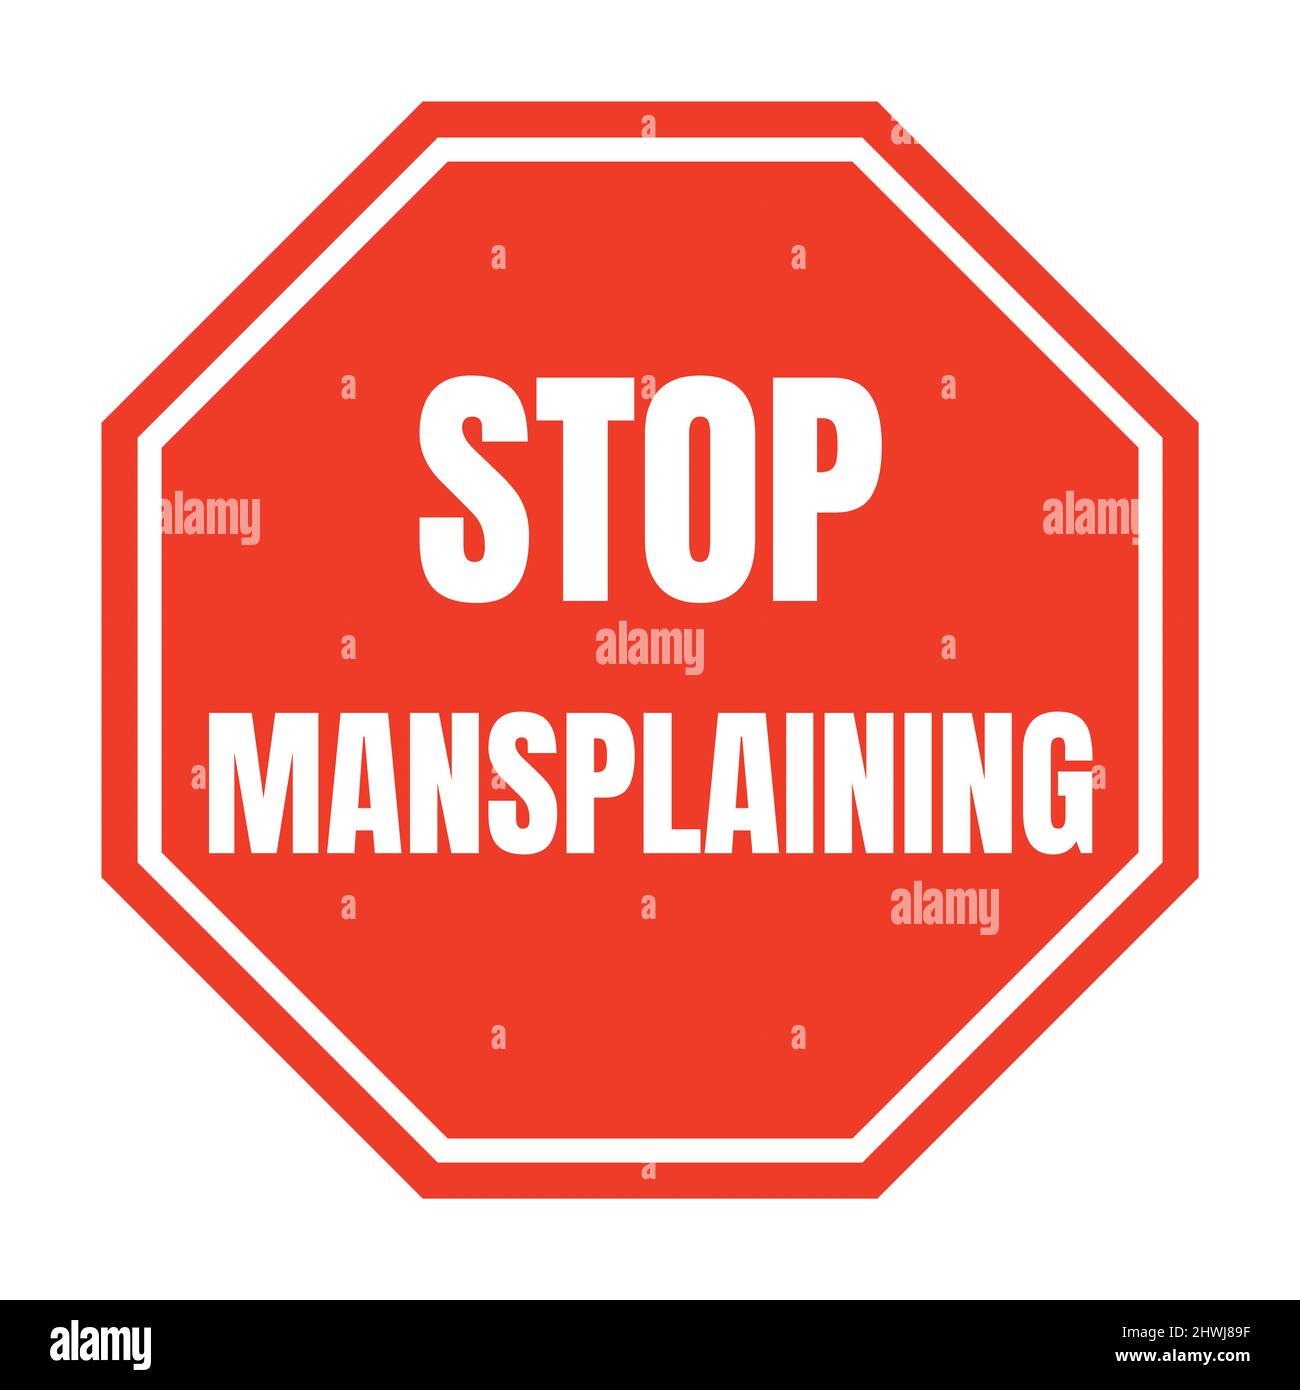 Stop mansplaining symbol icon Stock Photo